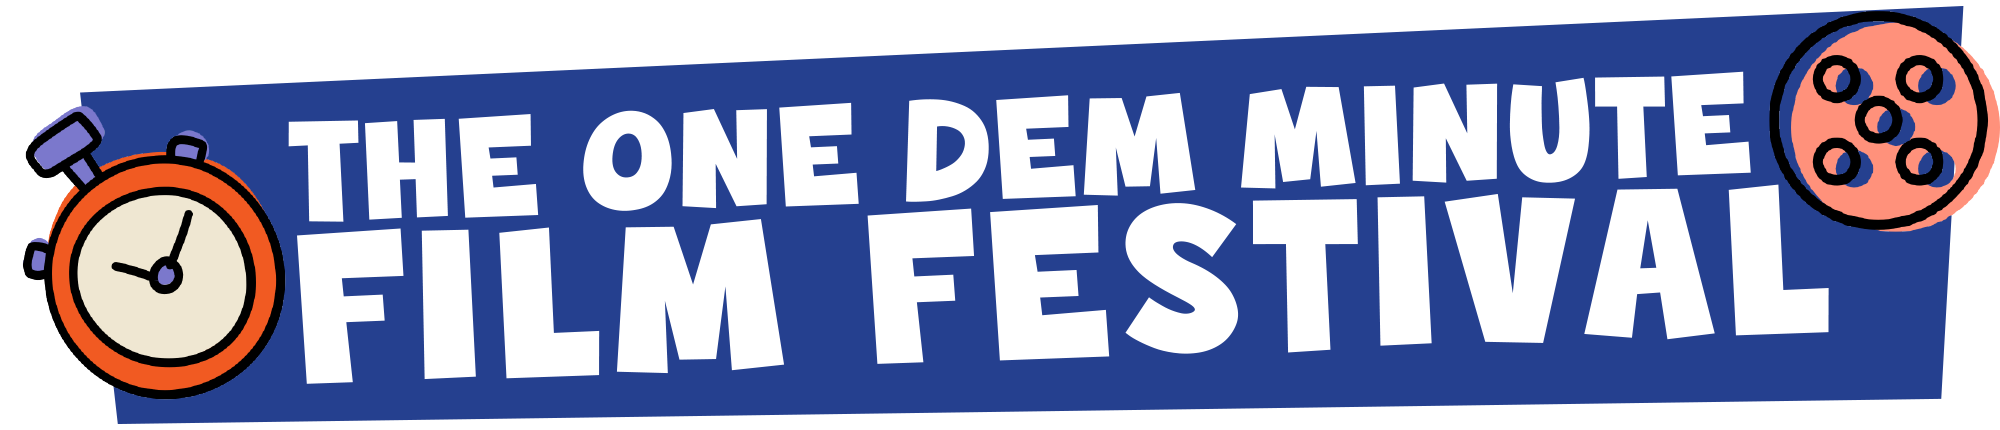 One Dem Minute Film Festival banner logo